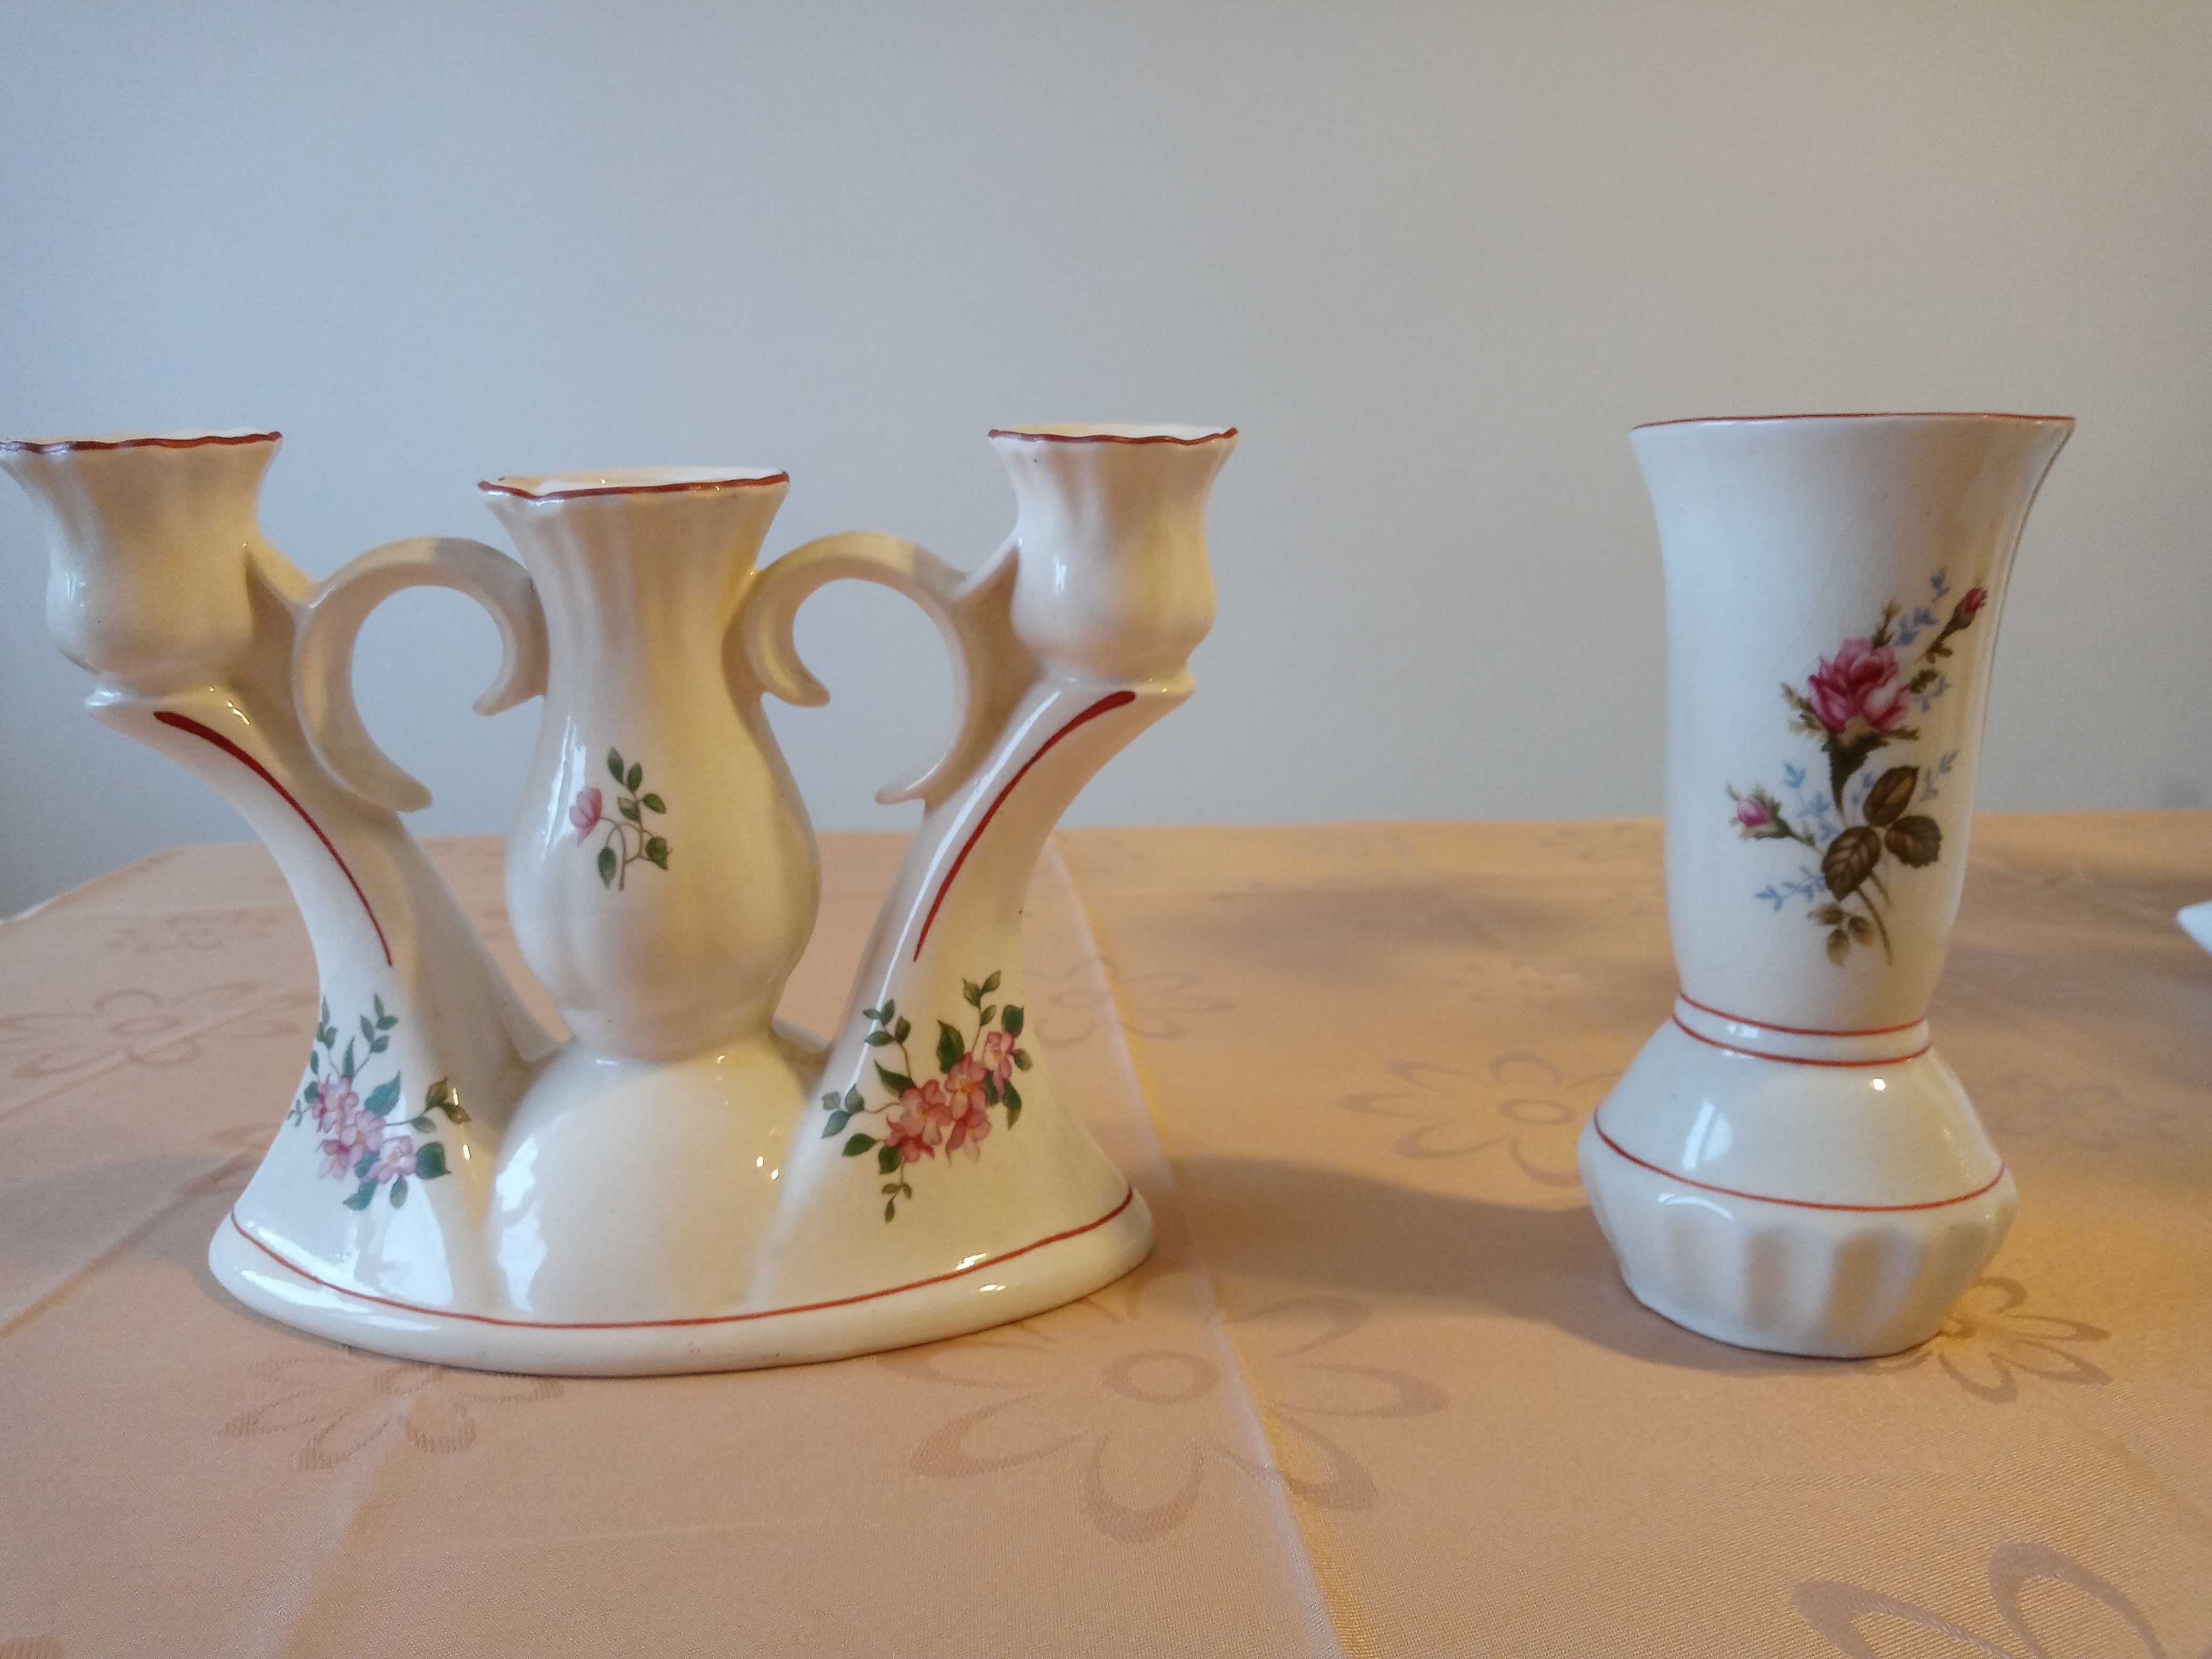 kultowa ceramika lata 80te -stary świecznik i wazonik